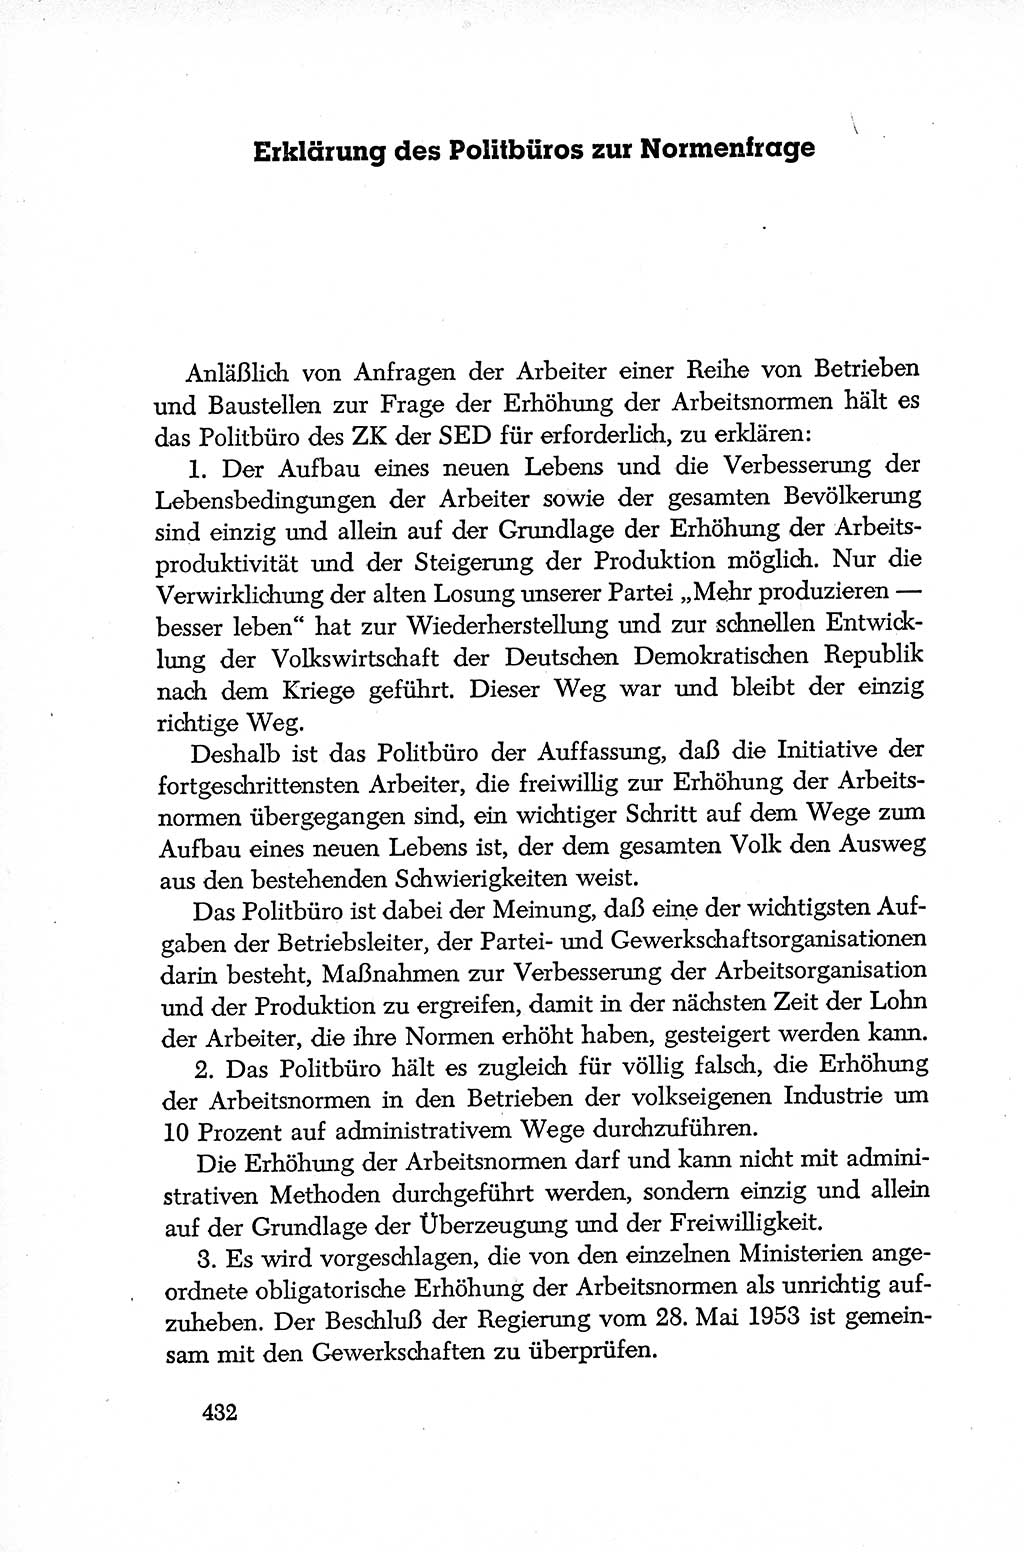 Dokumente der Sozialistischen Einheitspartei Deutschlands (SED) [Deutsche Demokratische Republik (DDR)] 1952-1953, Seite 432 (Dok. SED DDR 1952-1953, S. 432)